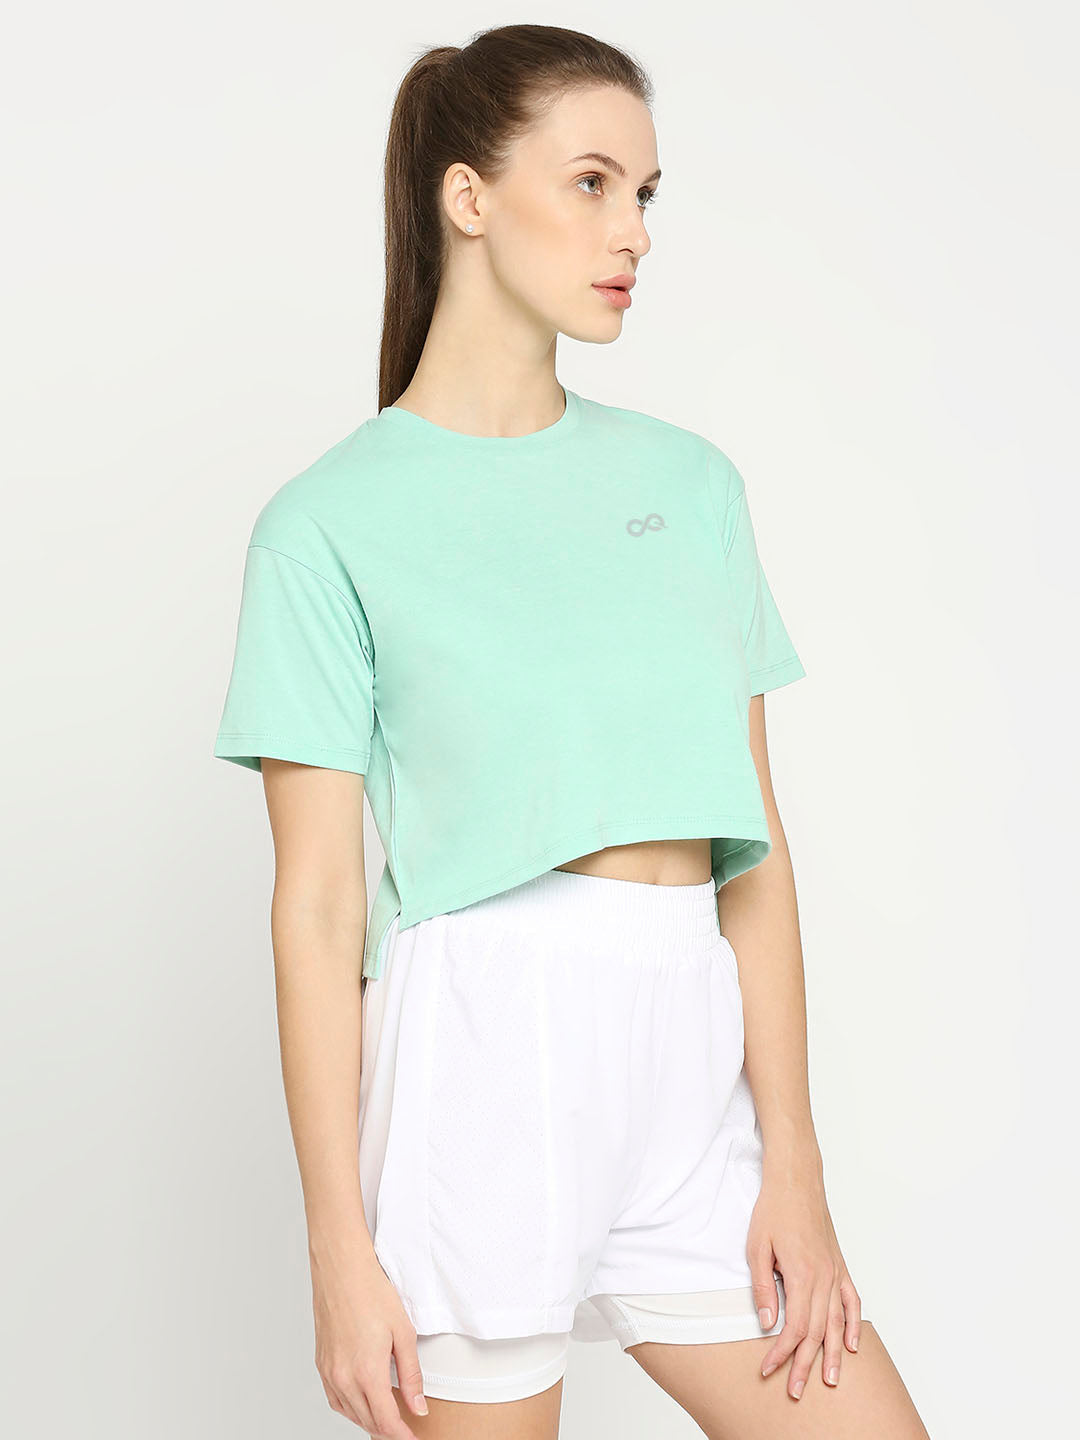 Women's Sports Cropped T-Shirt - Green